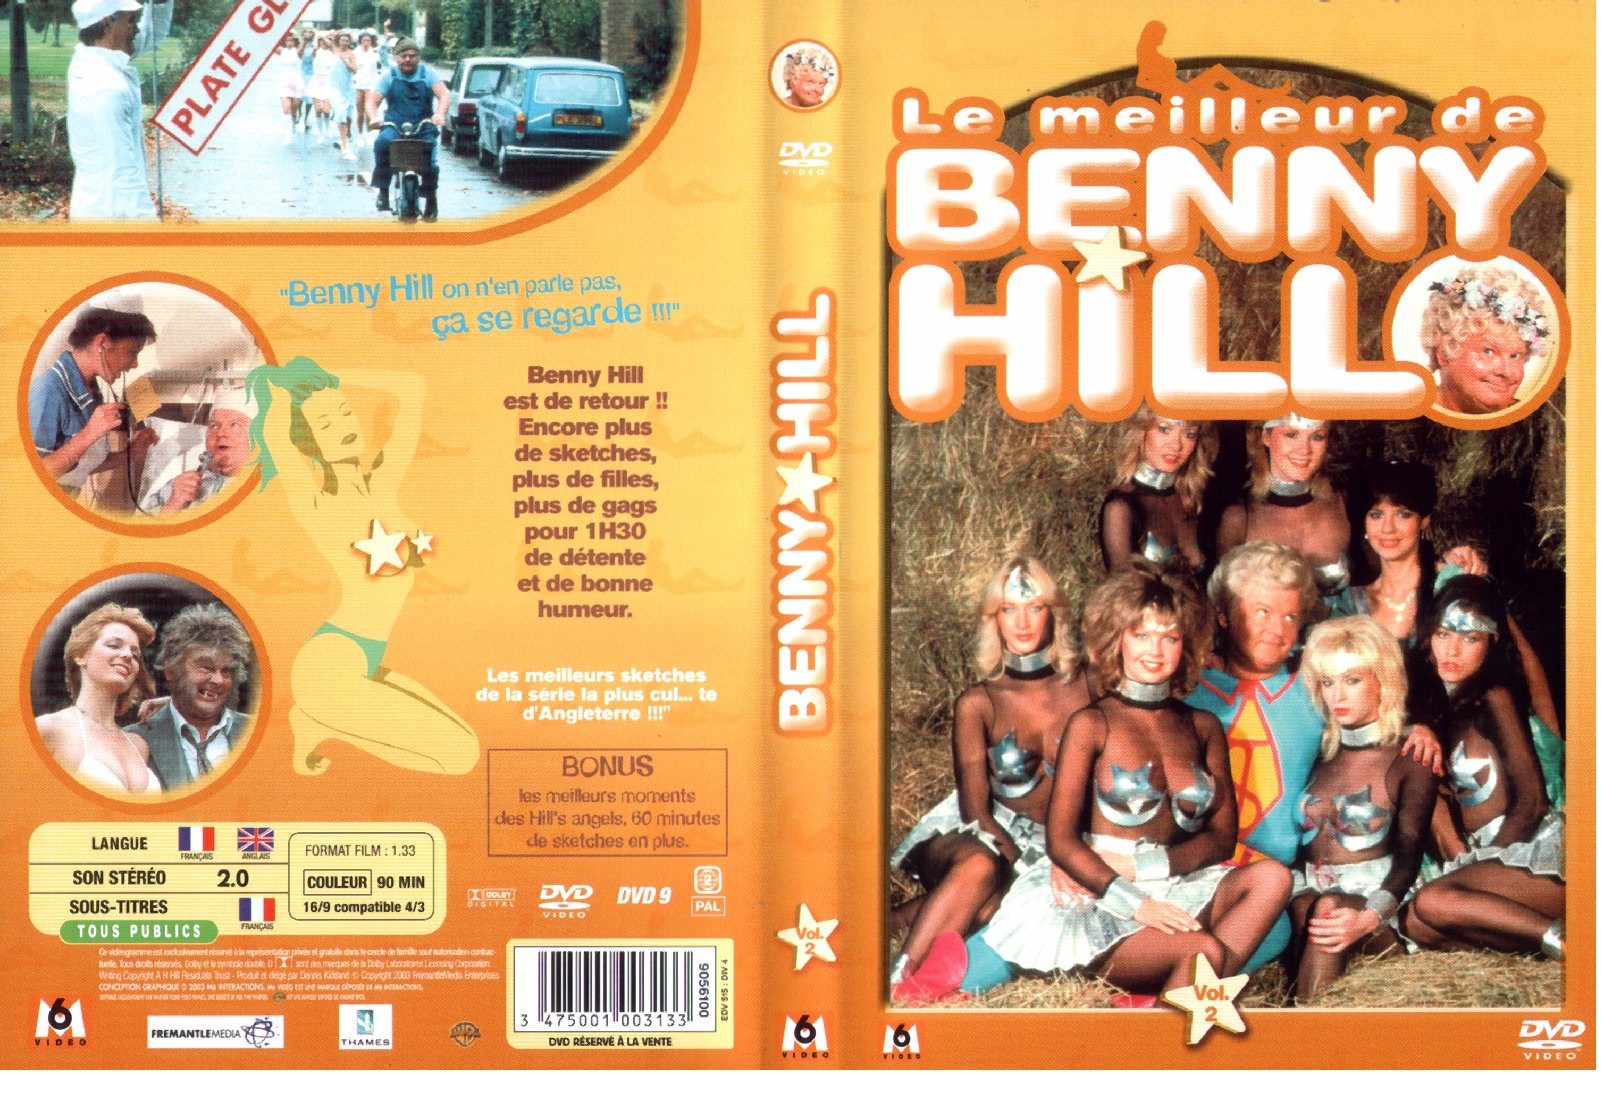 Jaquette DVD Benny Hill - Le meilleur de Benny Hill vol 2